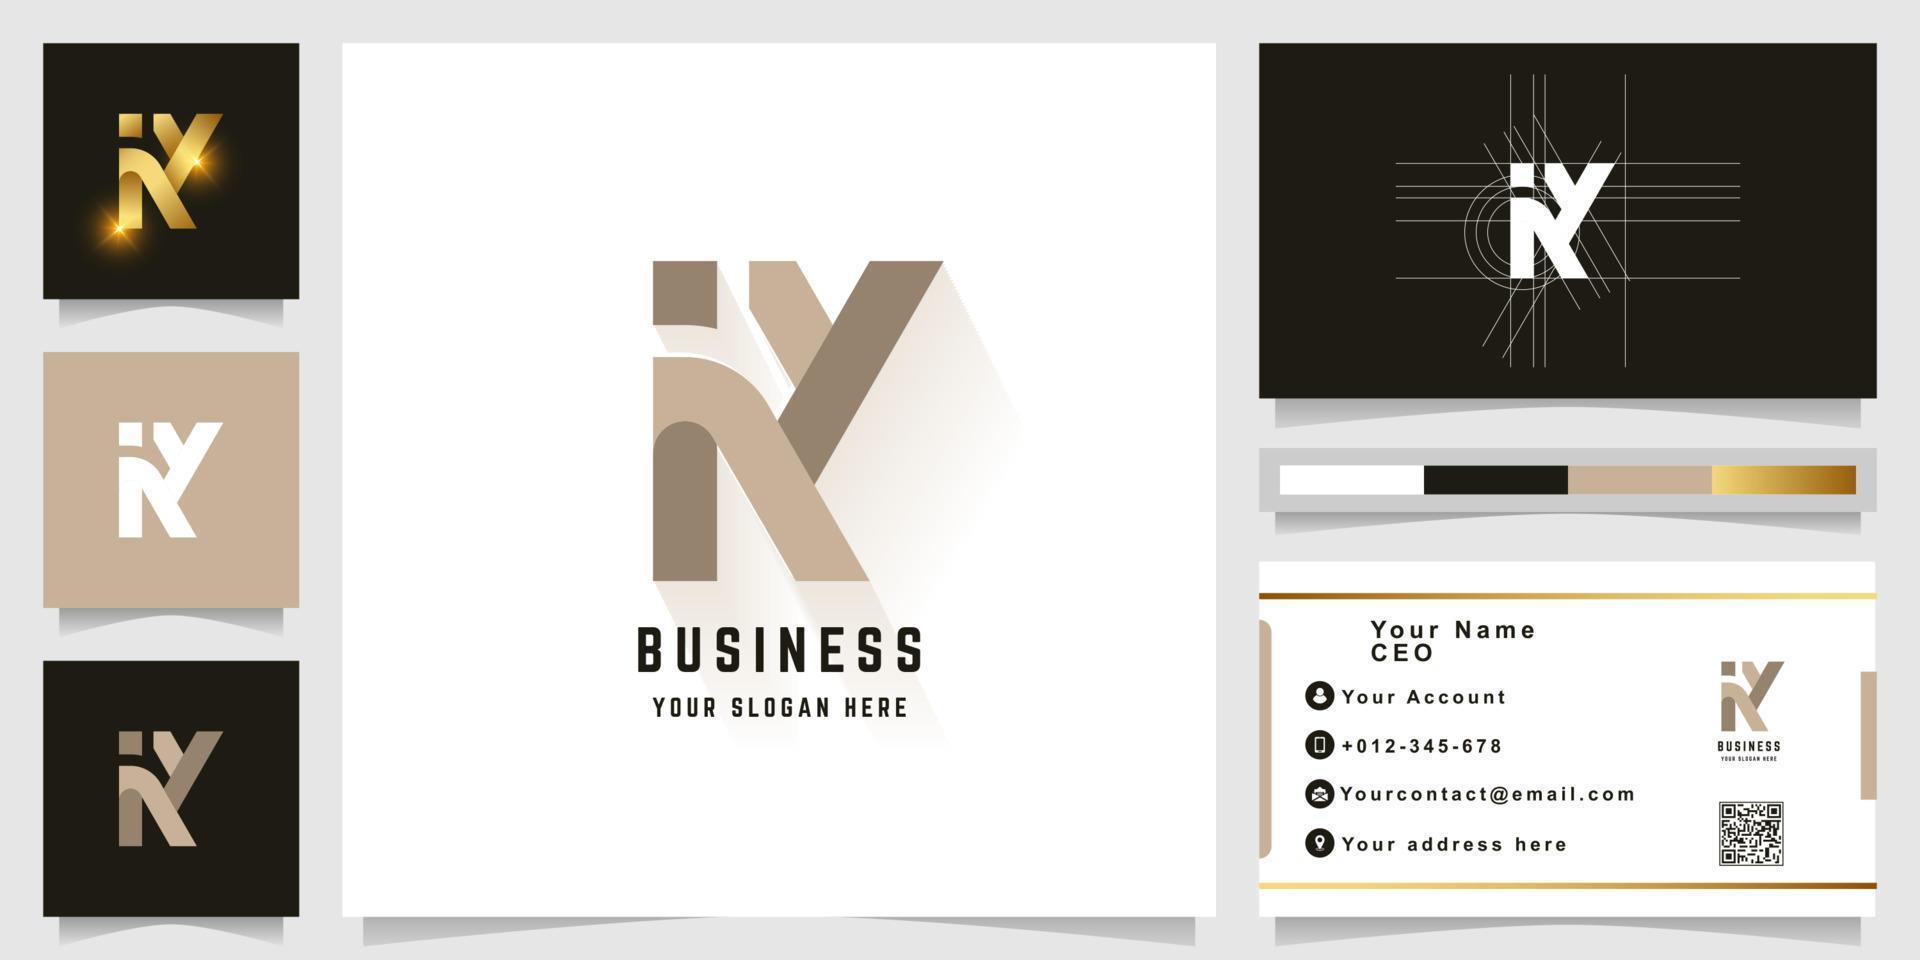 Letter KY or iK monogram logo with business card design vector